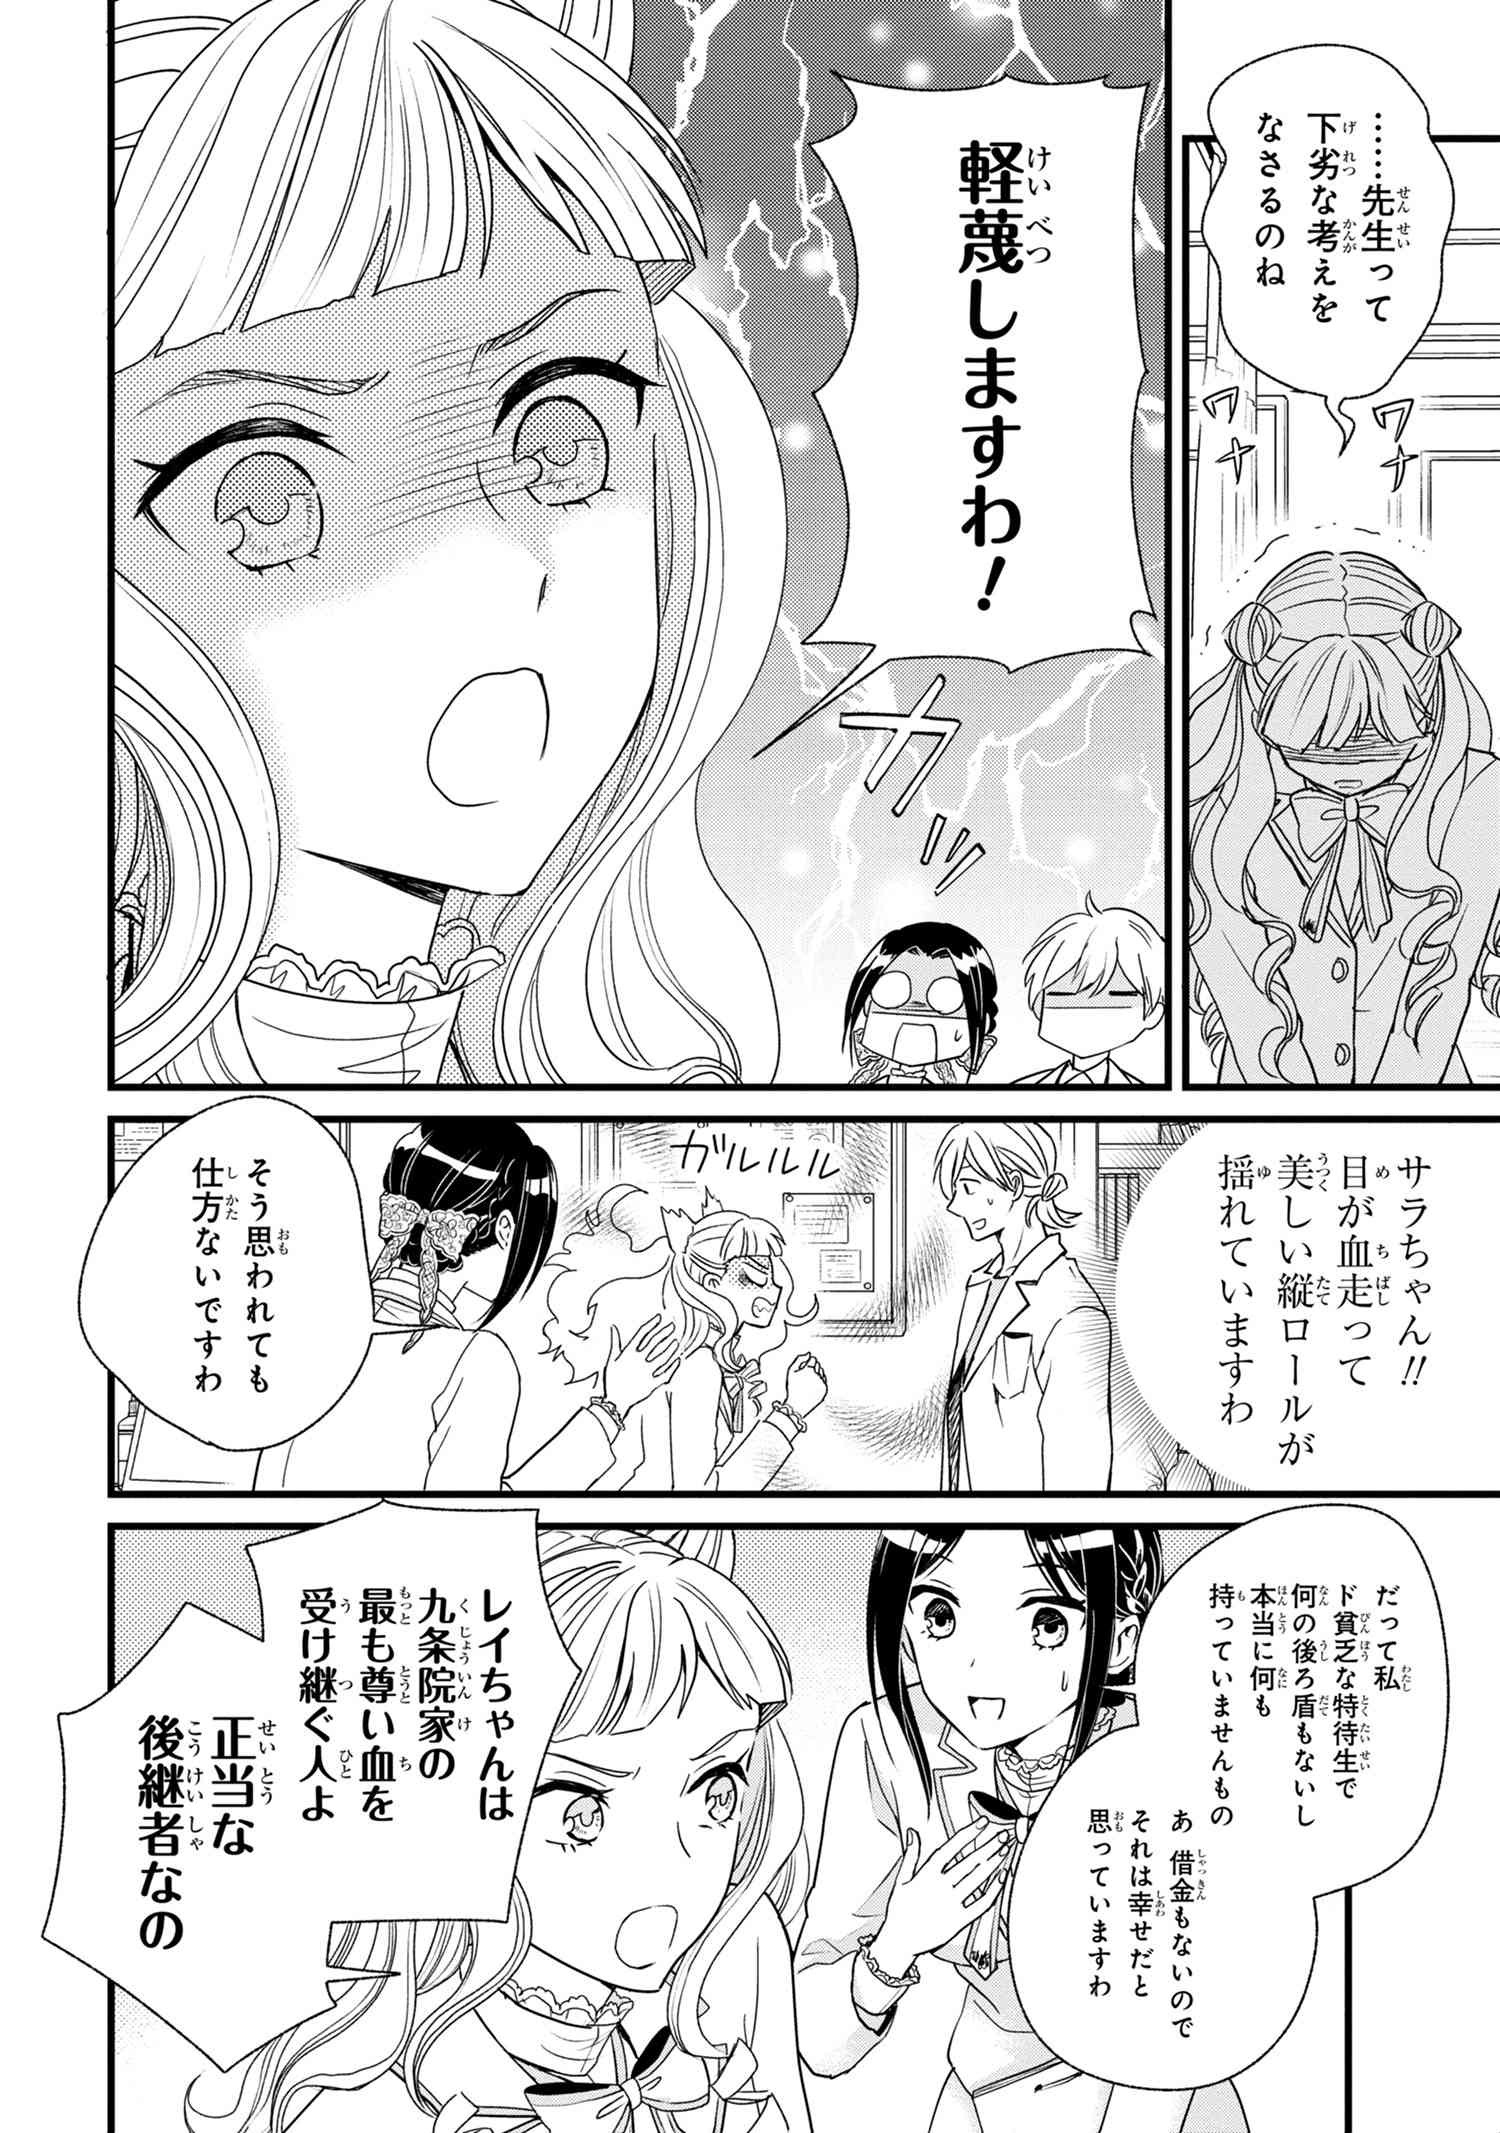 Reiko no Fuugi Akuyaku Reijou to Yobarete imasu ga, tada no Binbou Musume desu - Chapter 3-1 - Page 14